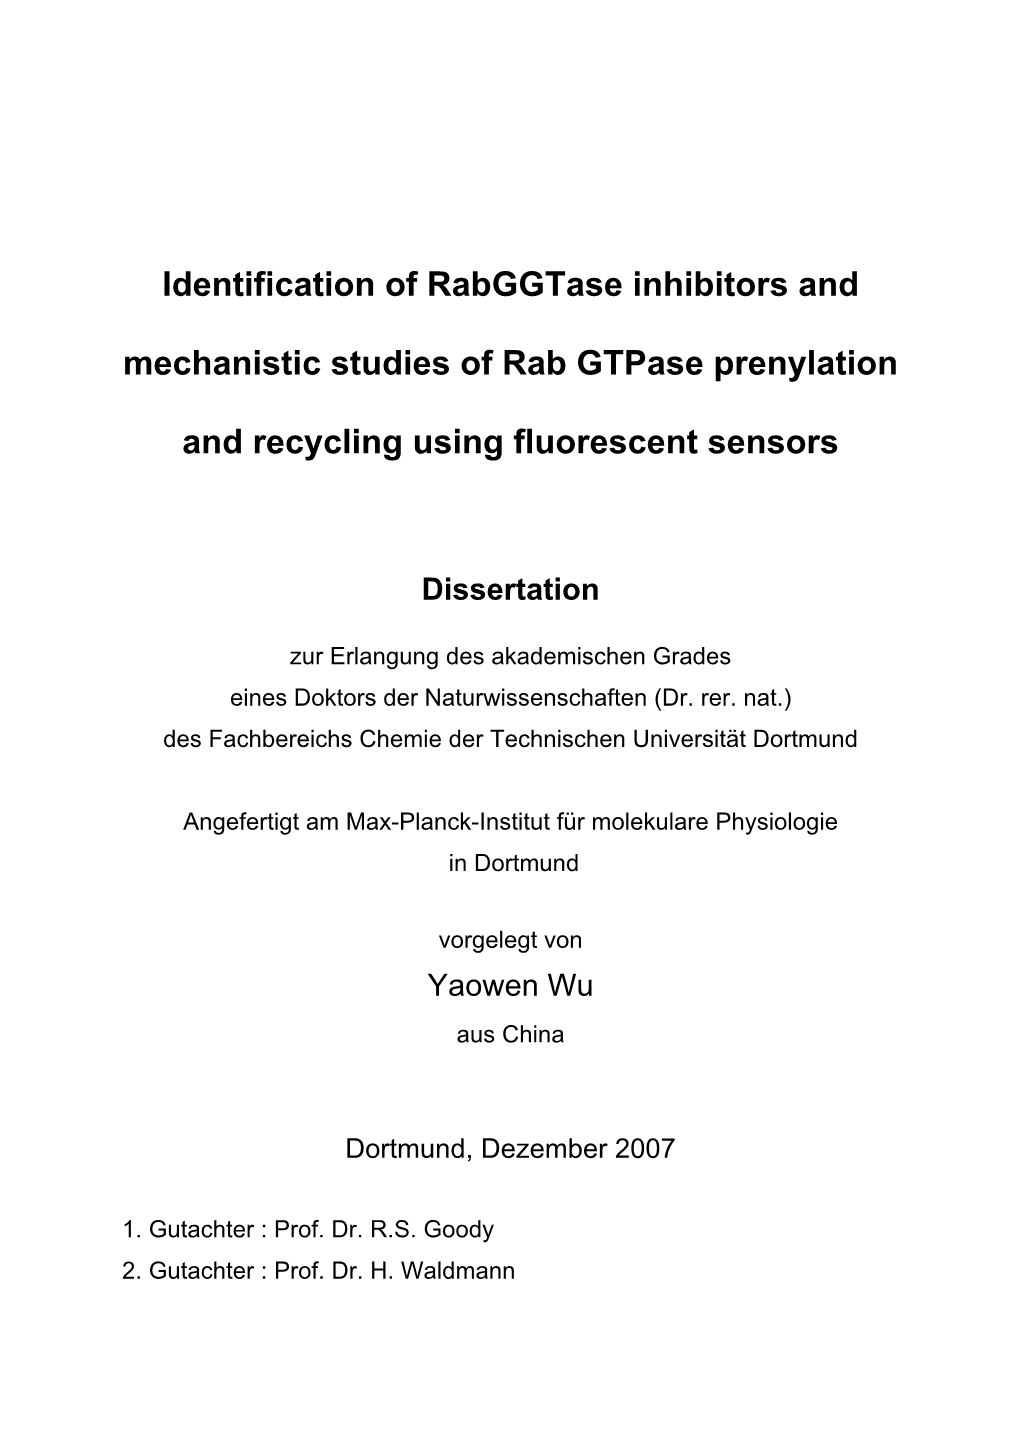 Identification of Rabggtase Inhibitors and Mechanistic Studies of Rab Gtpase Prenylation